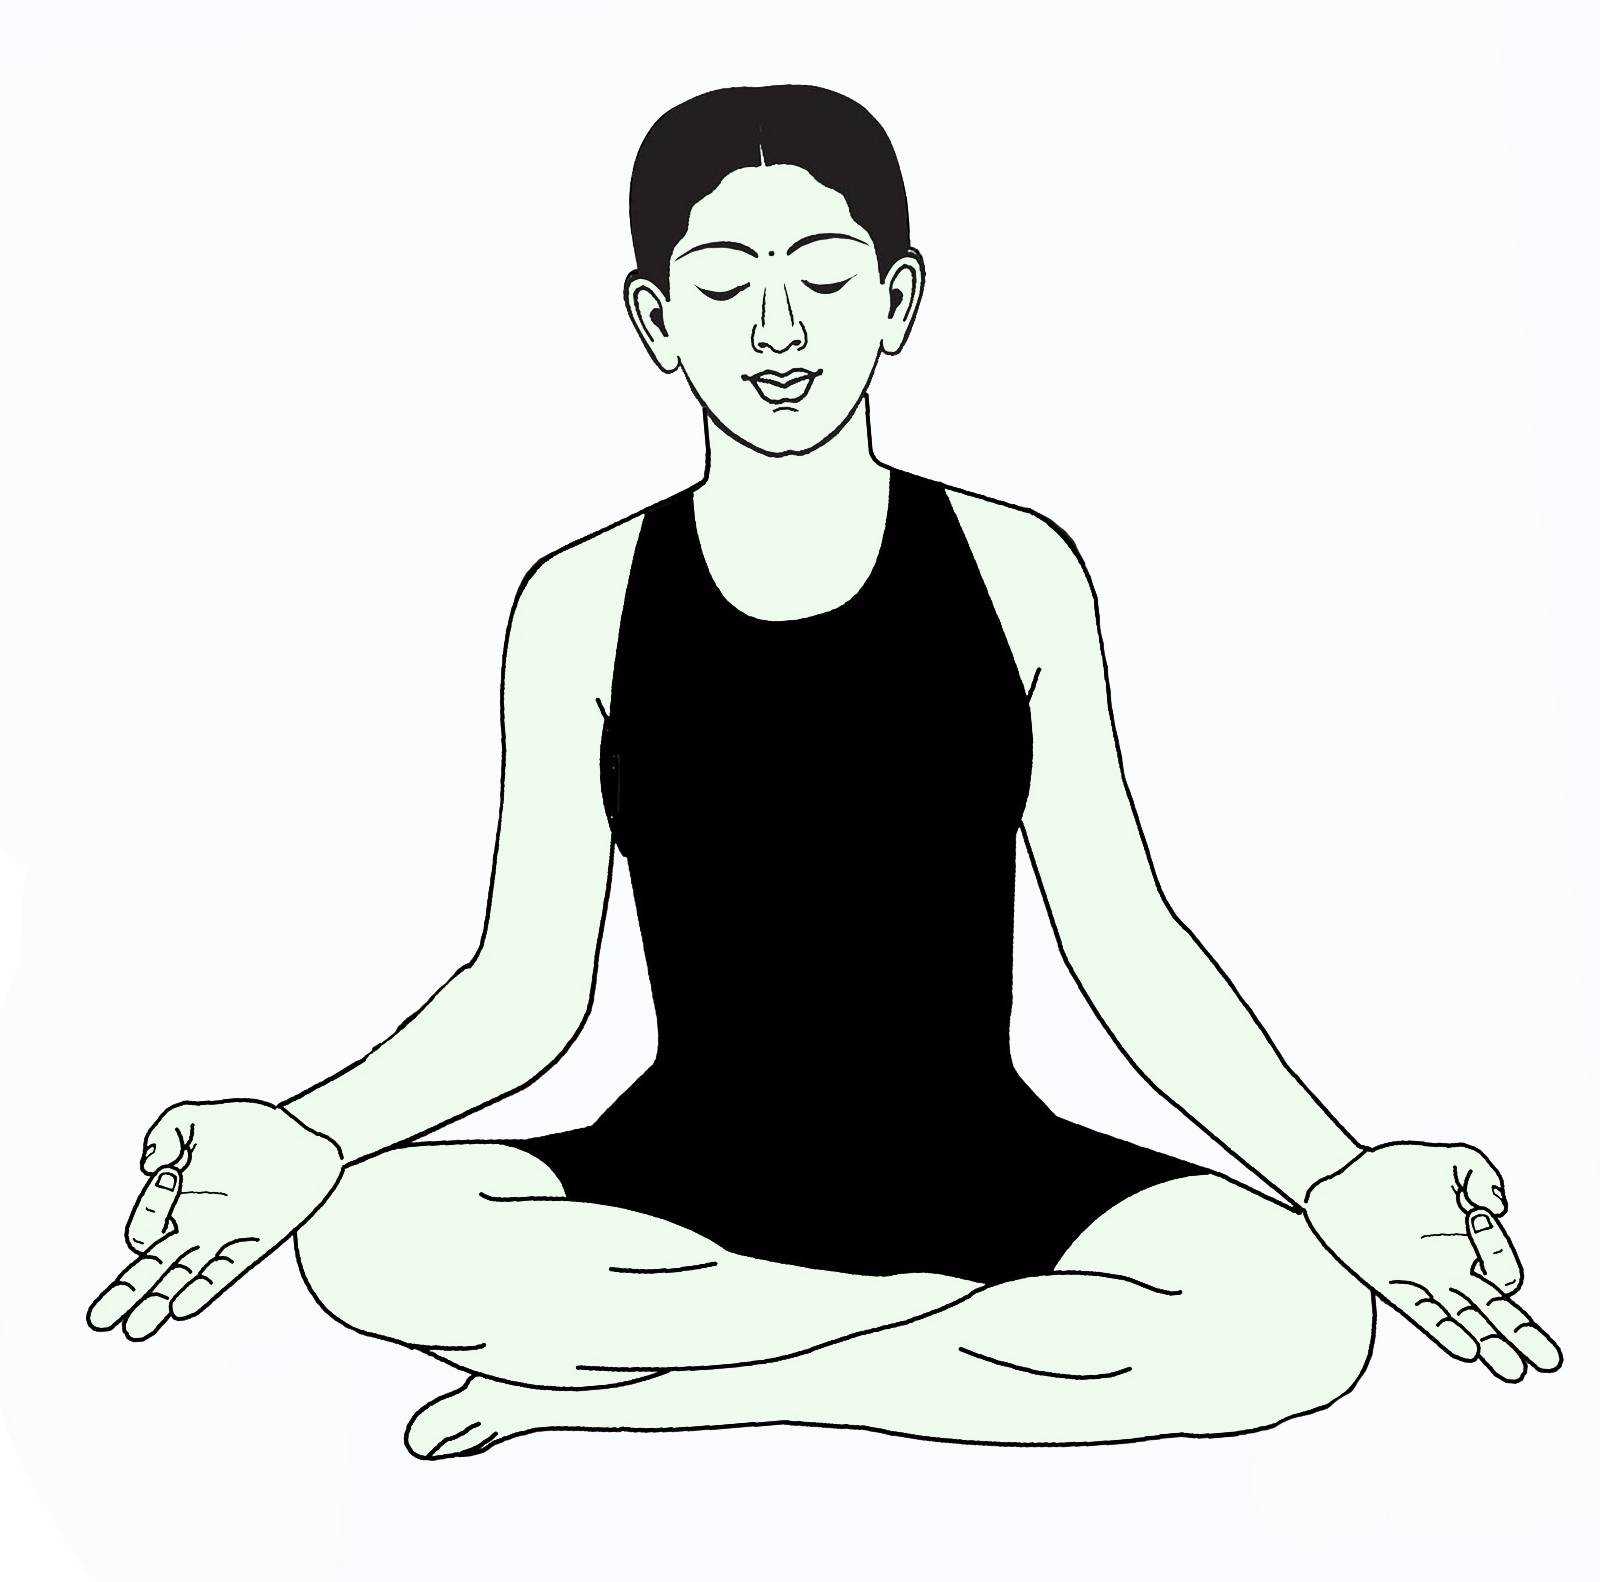 Медитативные позы для медитации – это положения тела или асаны, обычно сидя, но также иногда стоя или лежа, используемые для облегчения медитации Наиболее известными являются лотос и сиддхасана